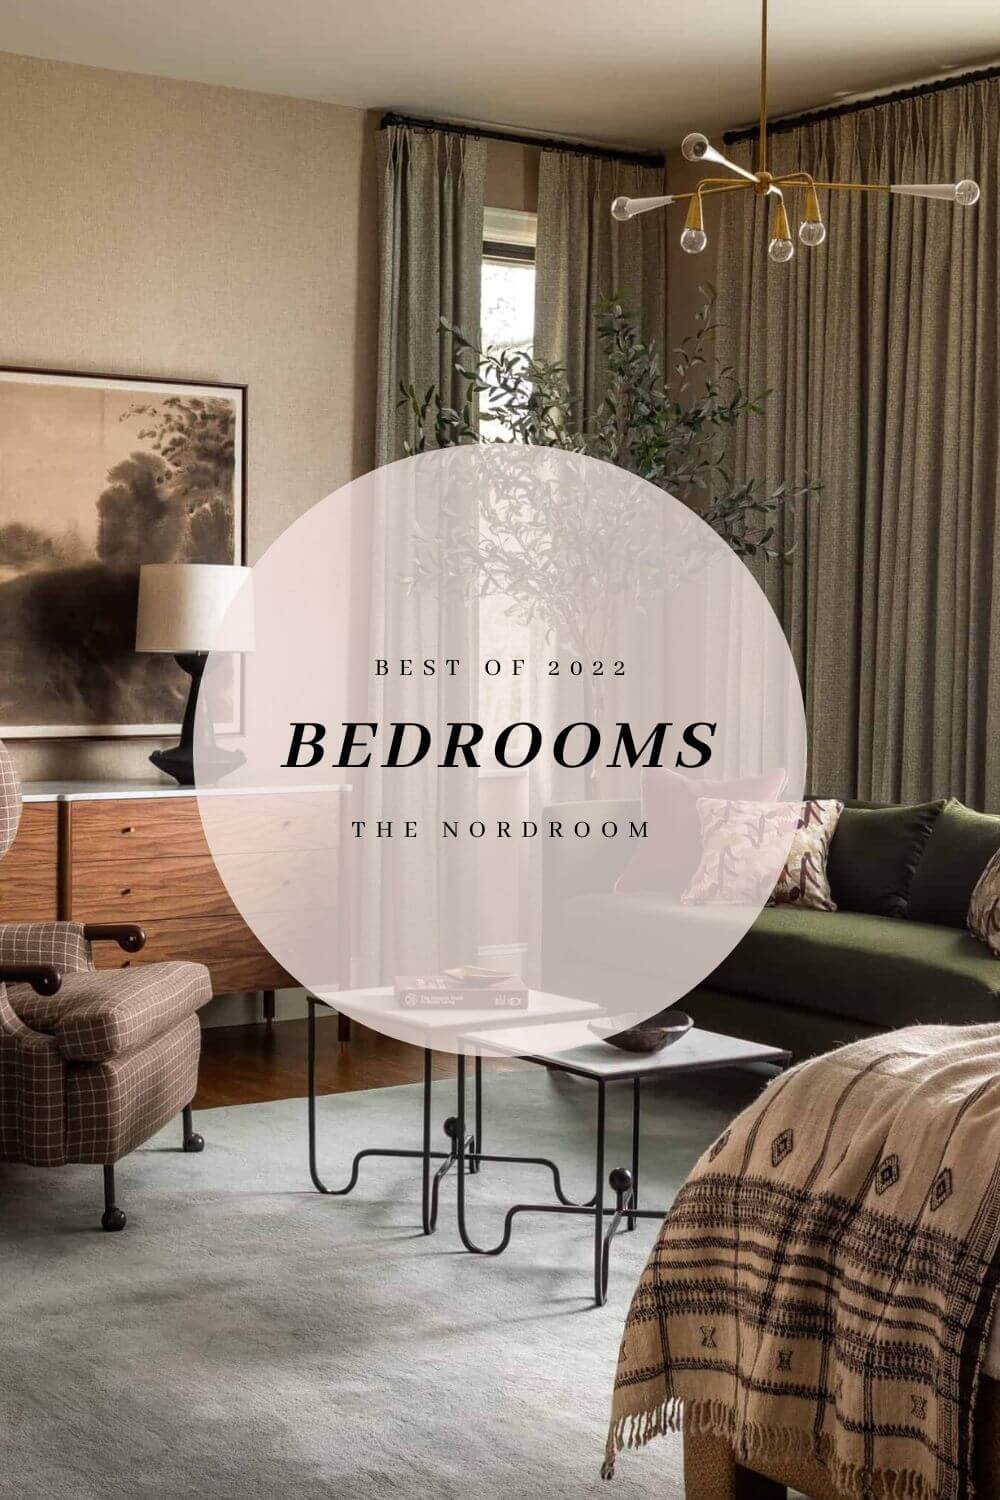 Best of 2022: Bedrooms